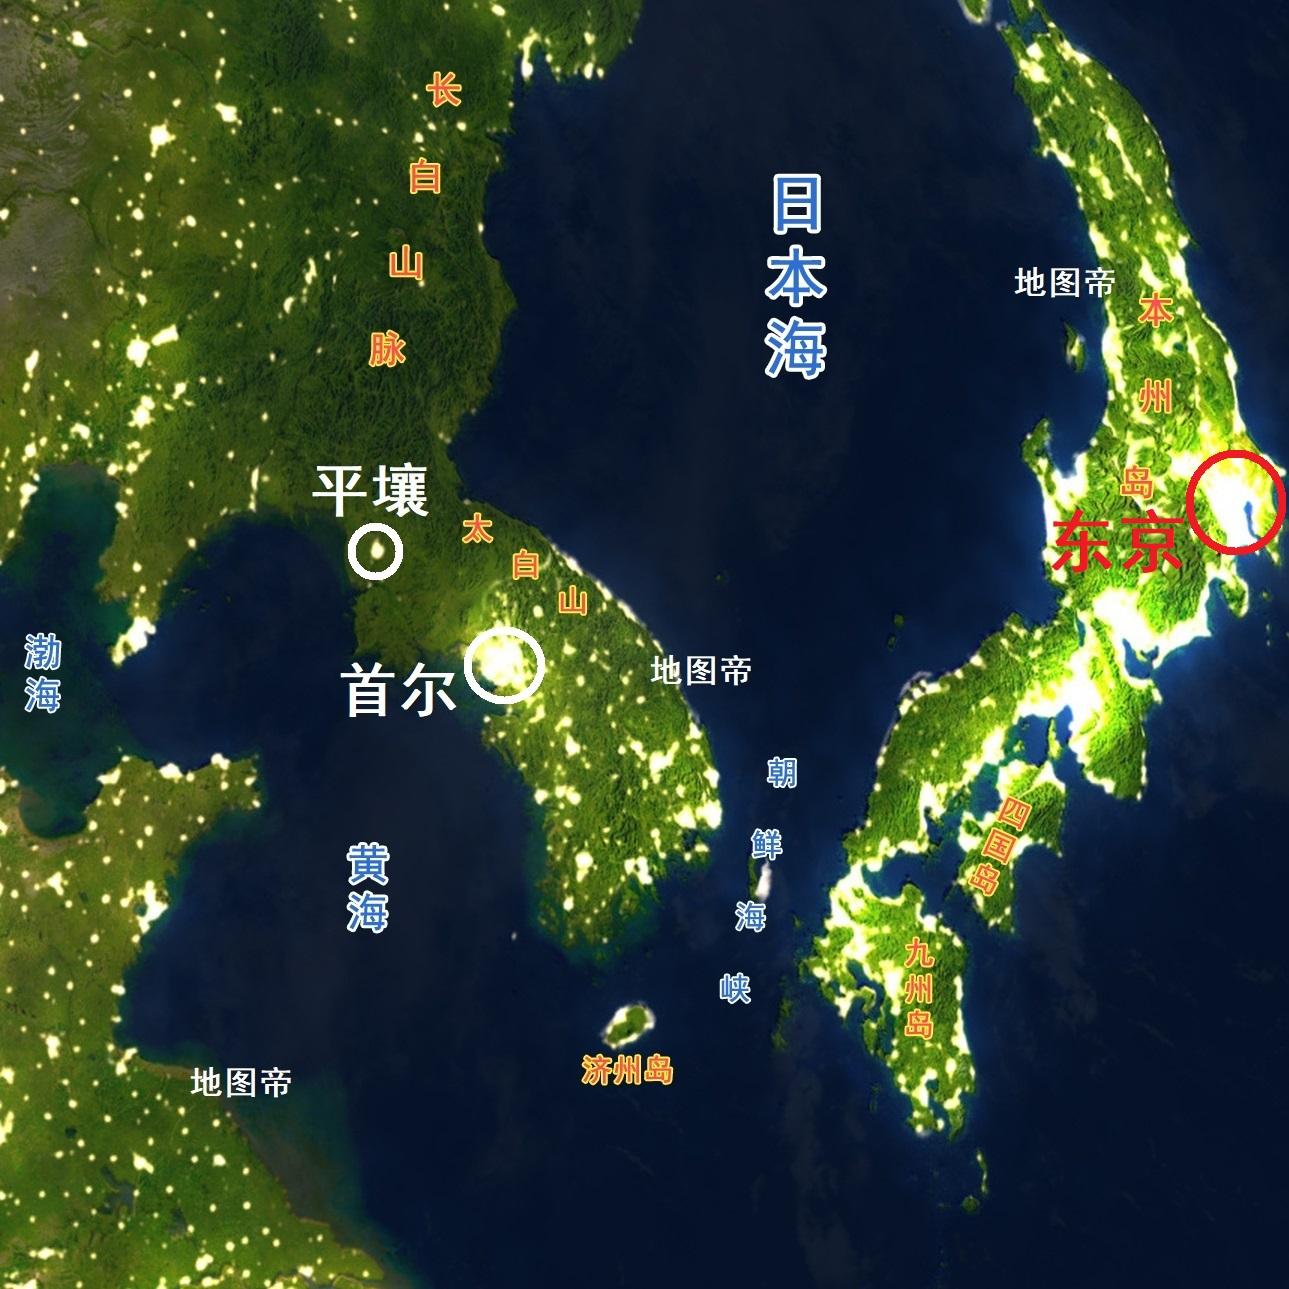 郑州市地图|郑州市地图全图高清版大图片|旅途风景图片网|www.visacits.com